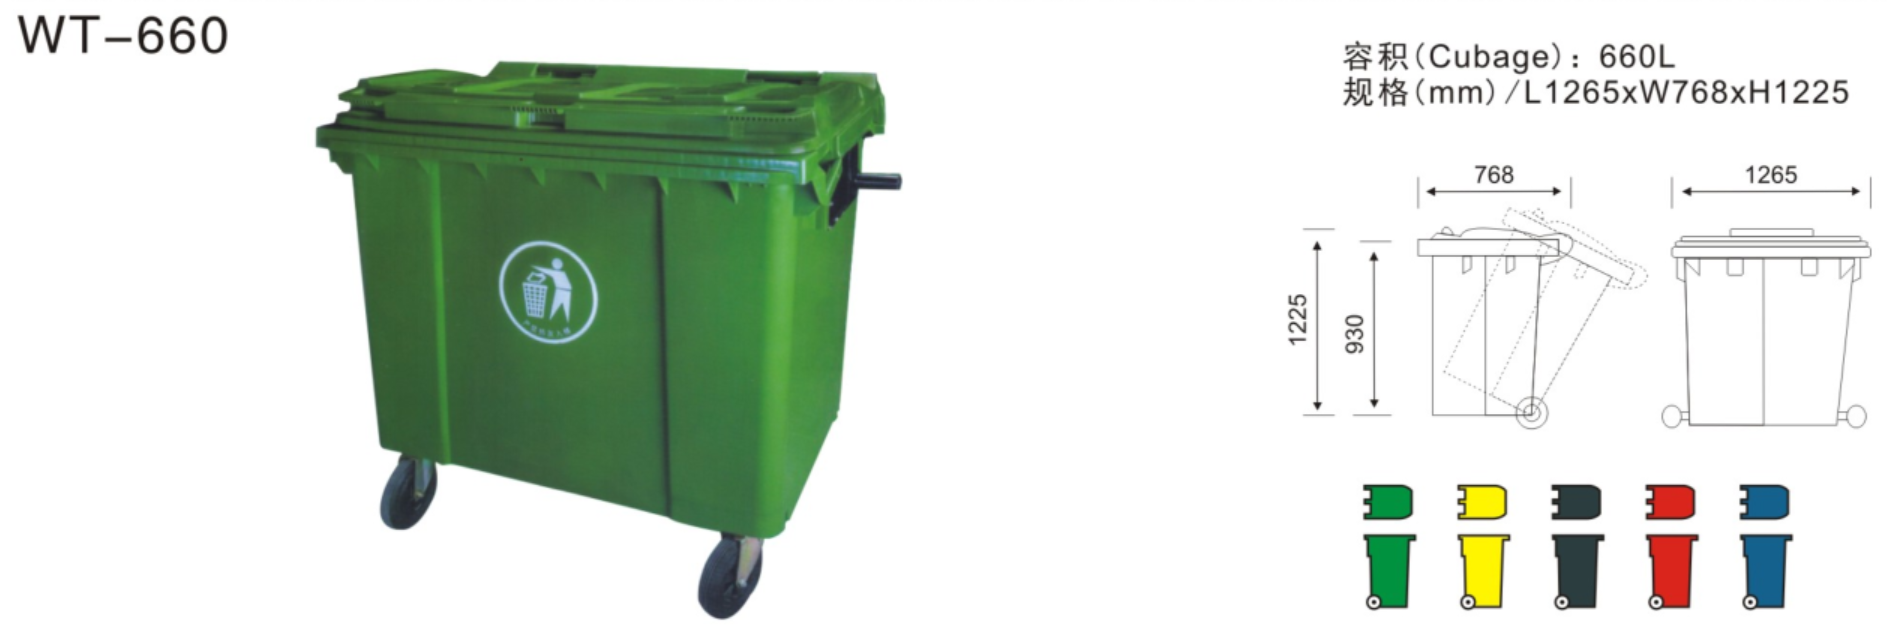 达州660L塑料垃圾桶